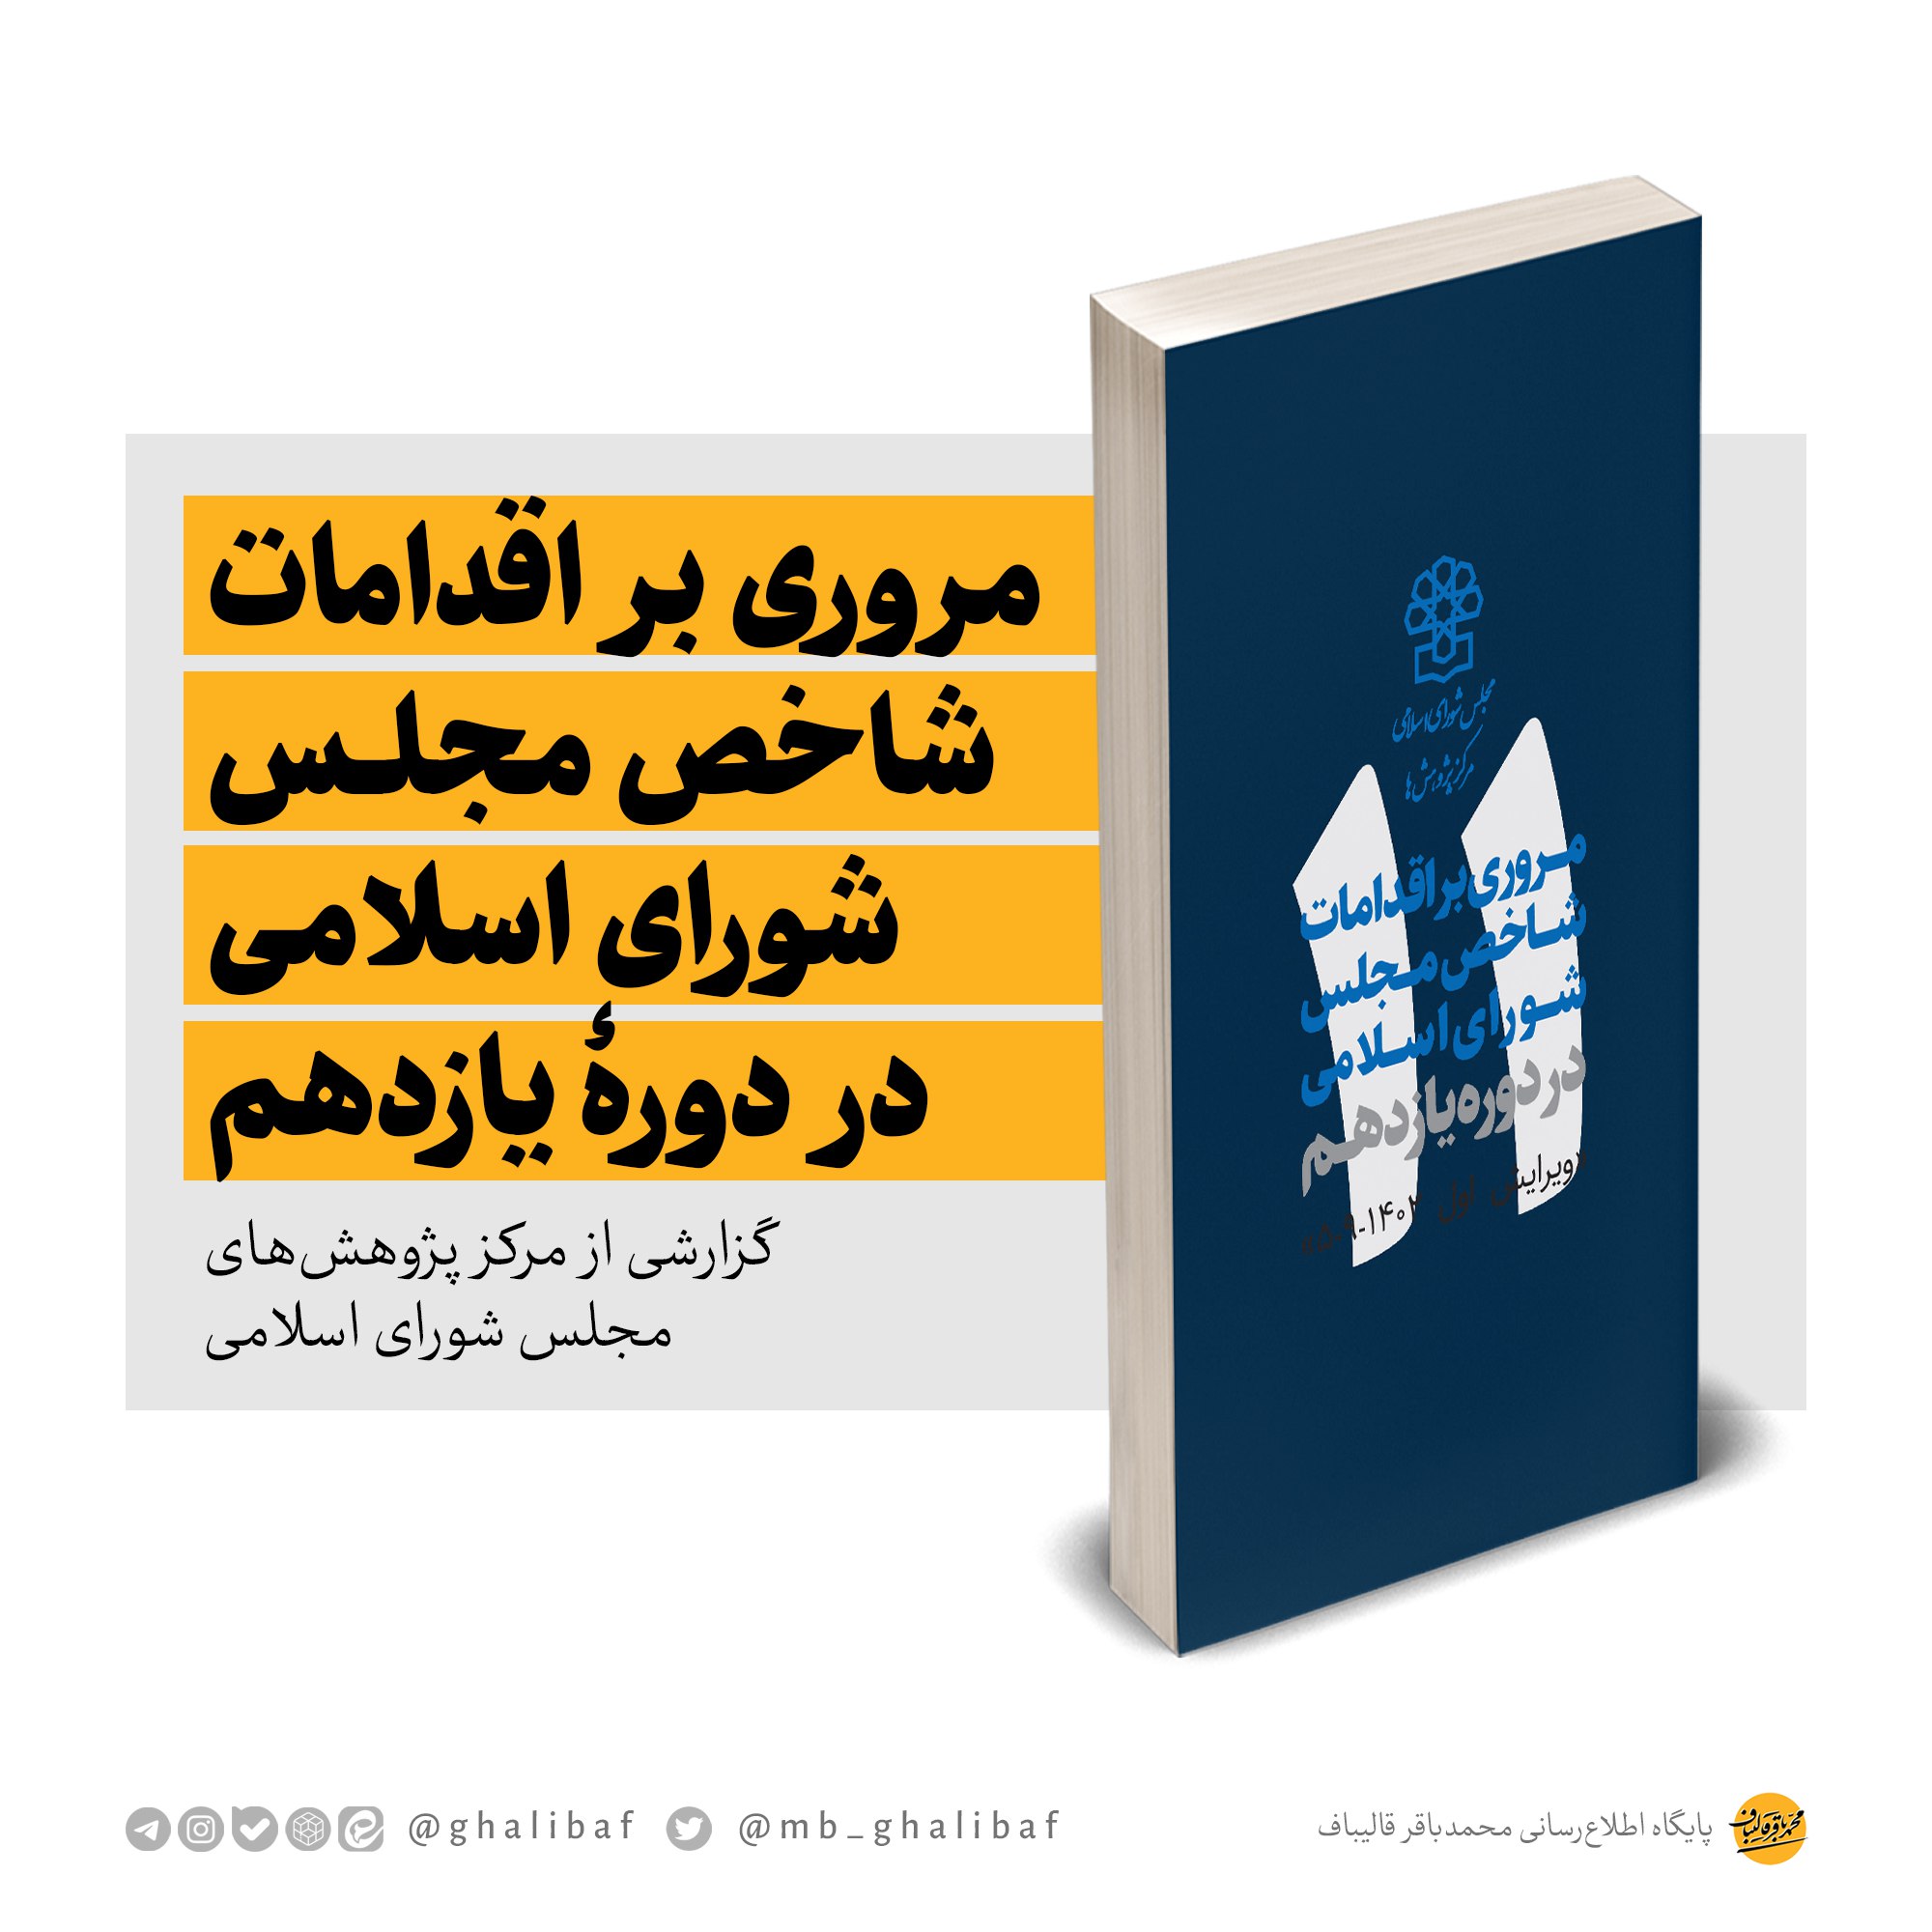 بررسی کارهای دکتر قالیباف و مجلس شورای اسلامی دوره 11 + دانلود PDF